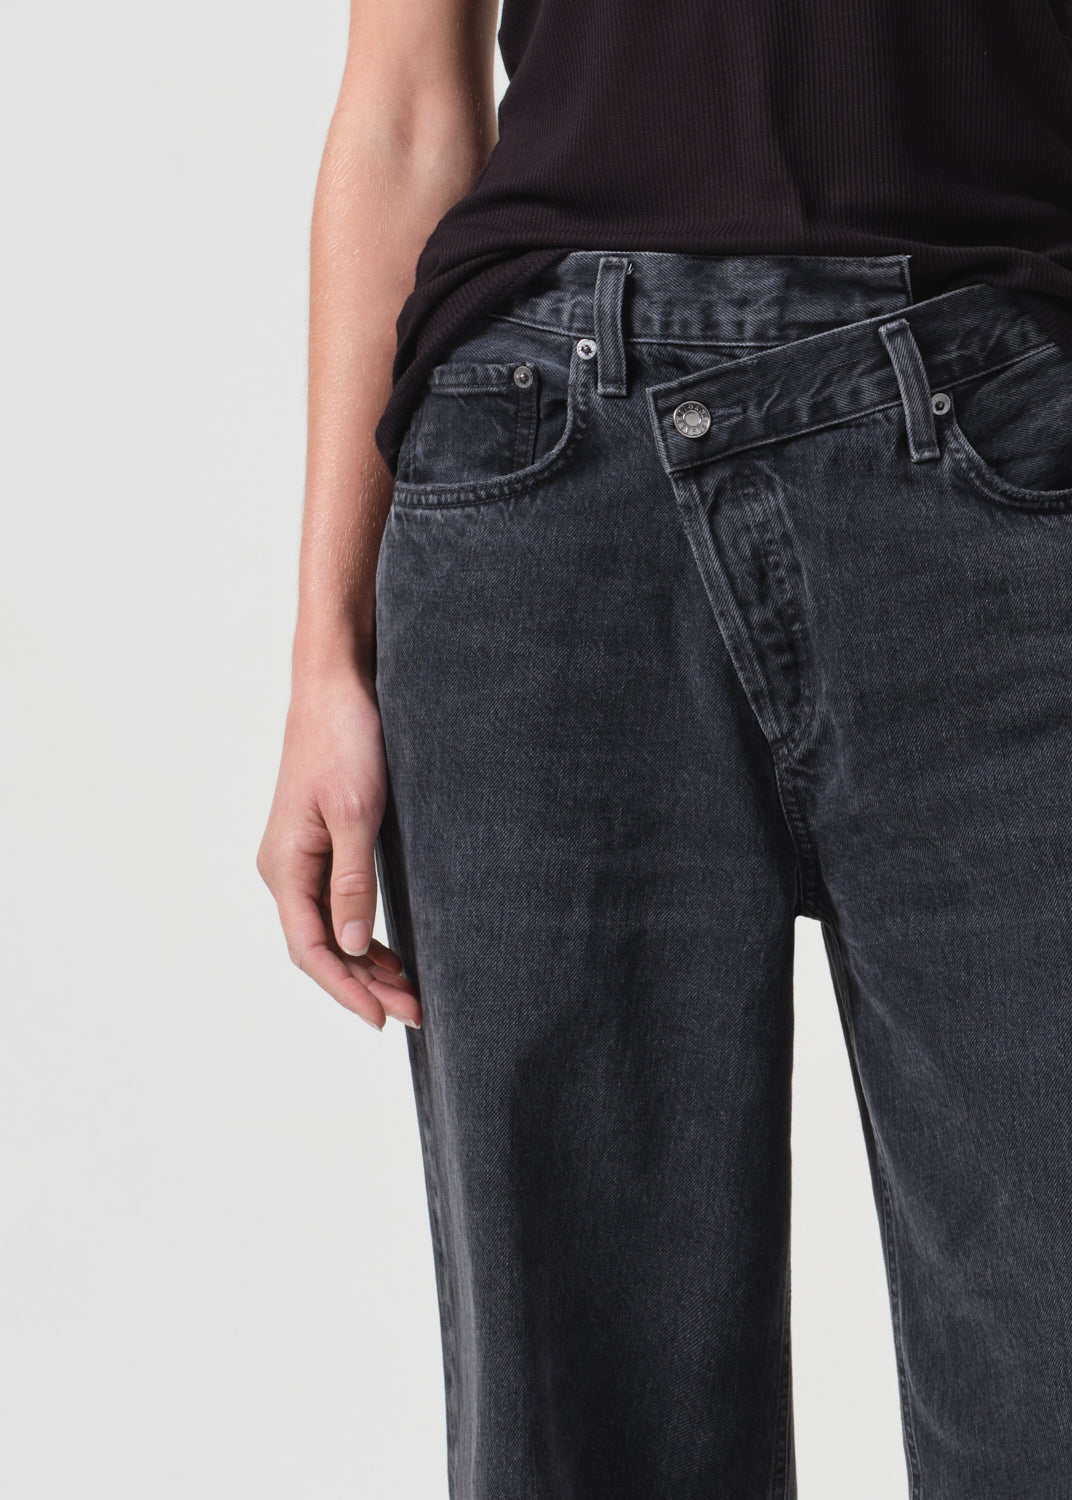 Criss Cross Upsized Jean in Shambles – AGOLDE